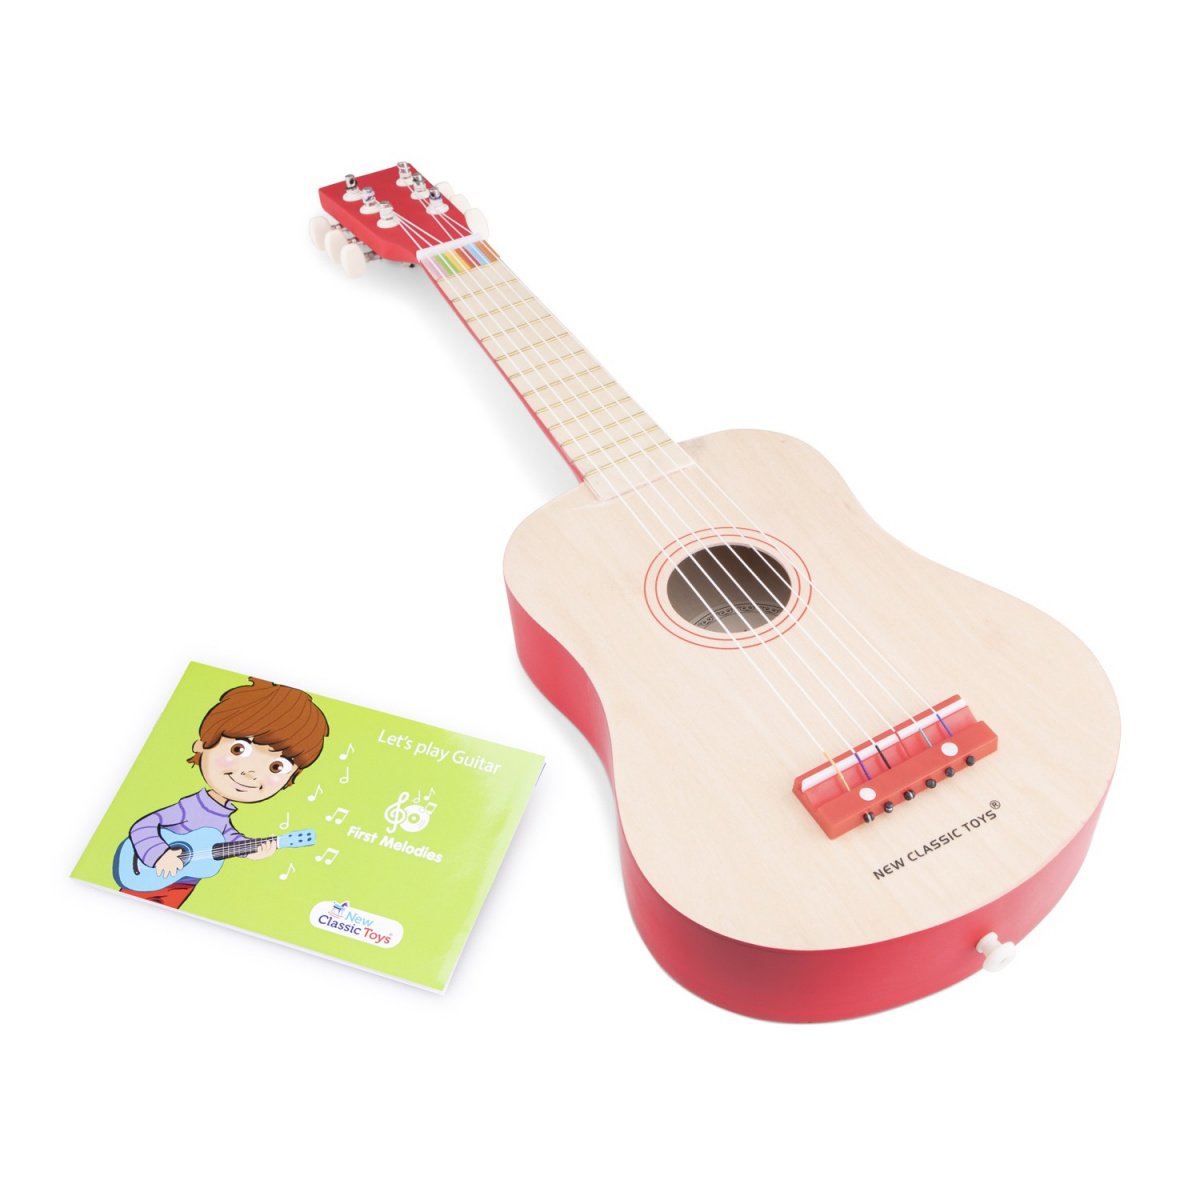 Детская гитара New Classic Toys красная (10300) - фото 2